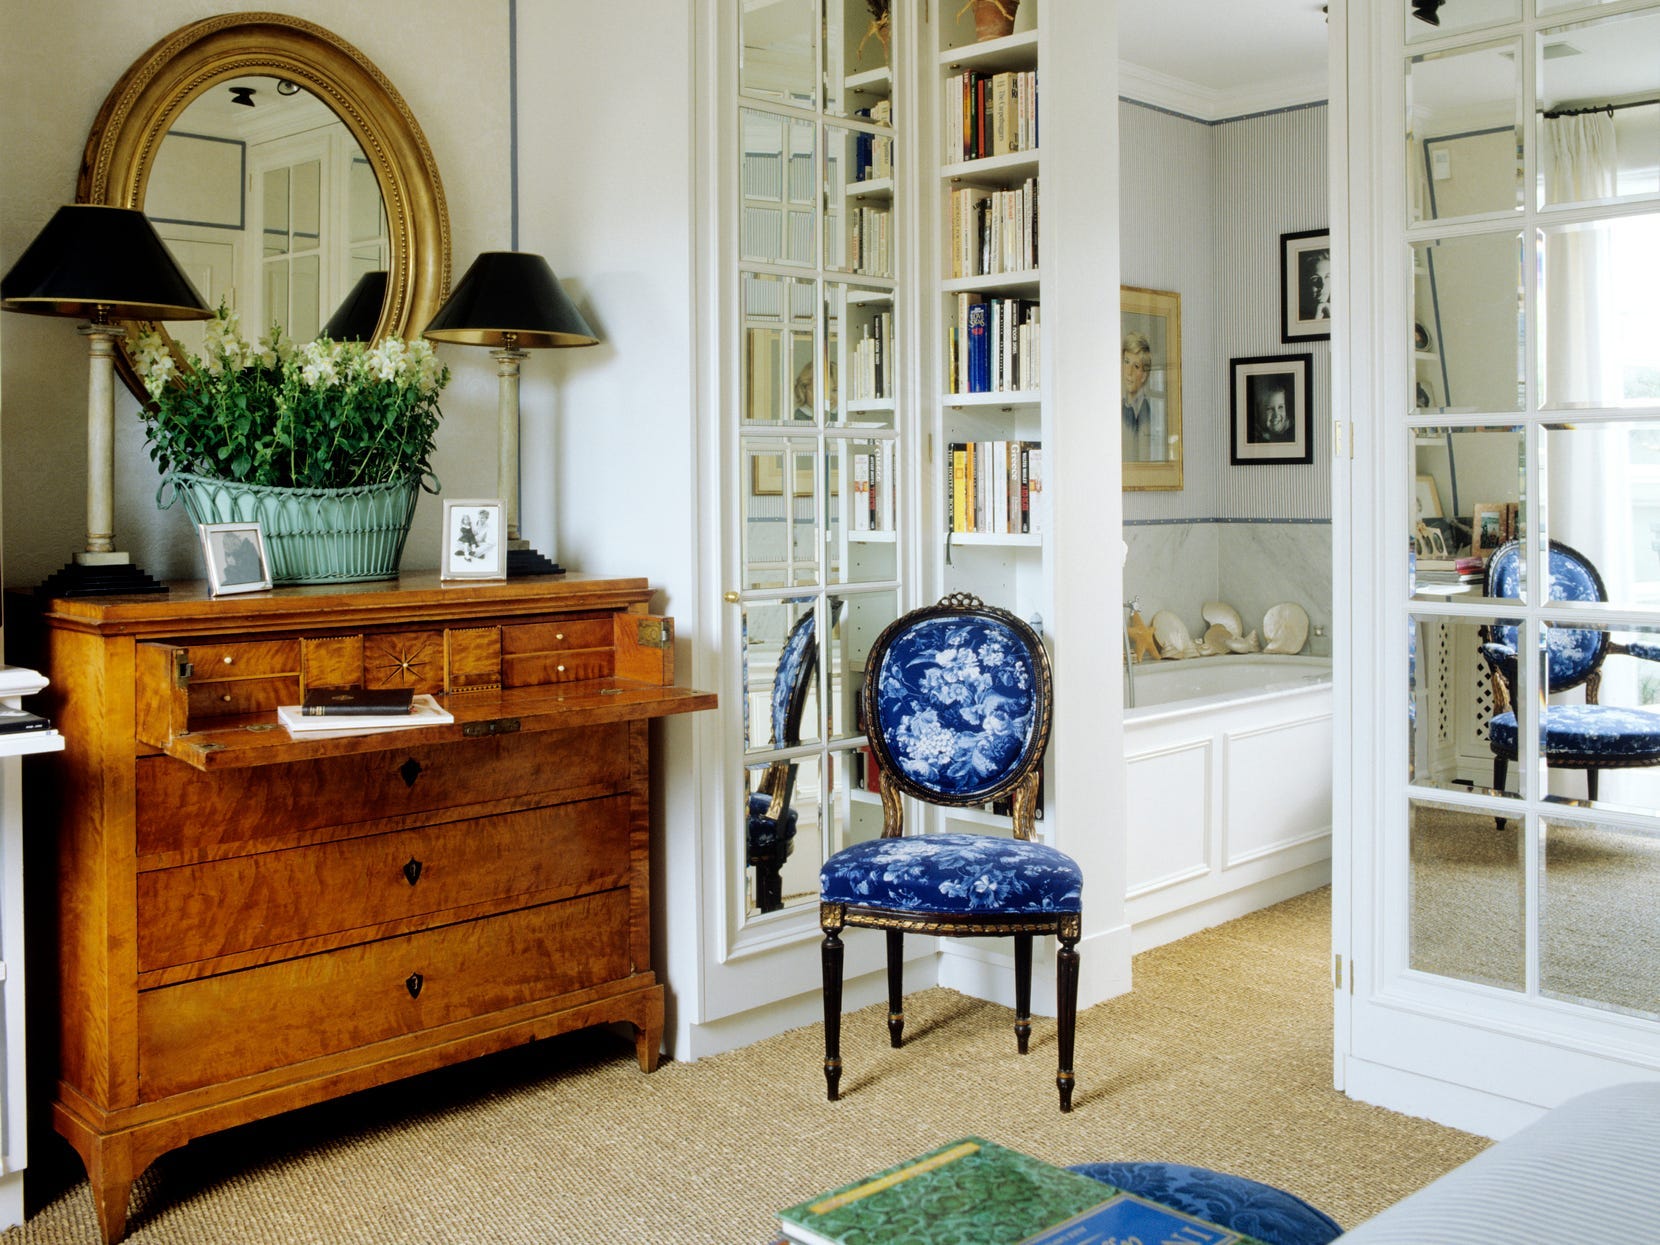 Eine Vintage-Kommode aus Holz mit einem ausklappbaren Regal, darunter ein Spiegel, Blumen und zwei Lampen.  Neben der Kommode stehen ein blauer Stuhl, ein kleines Bücherregal und ein Eingang zu einem Badezimmer.